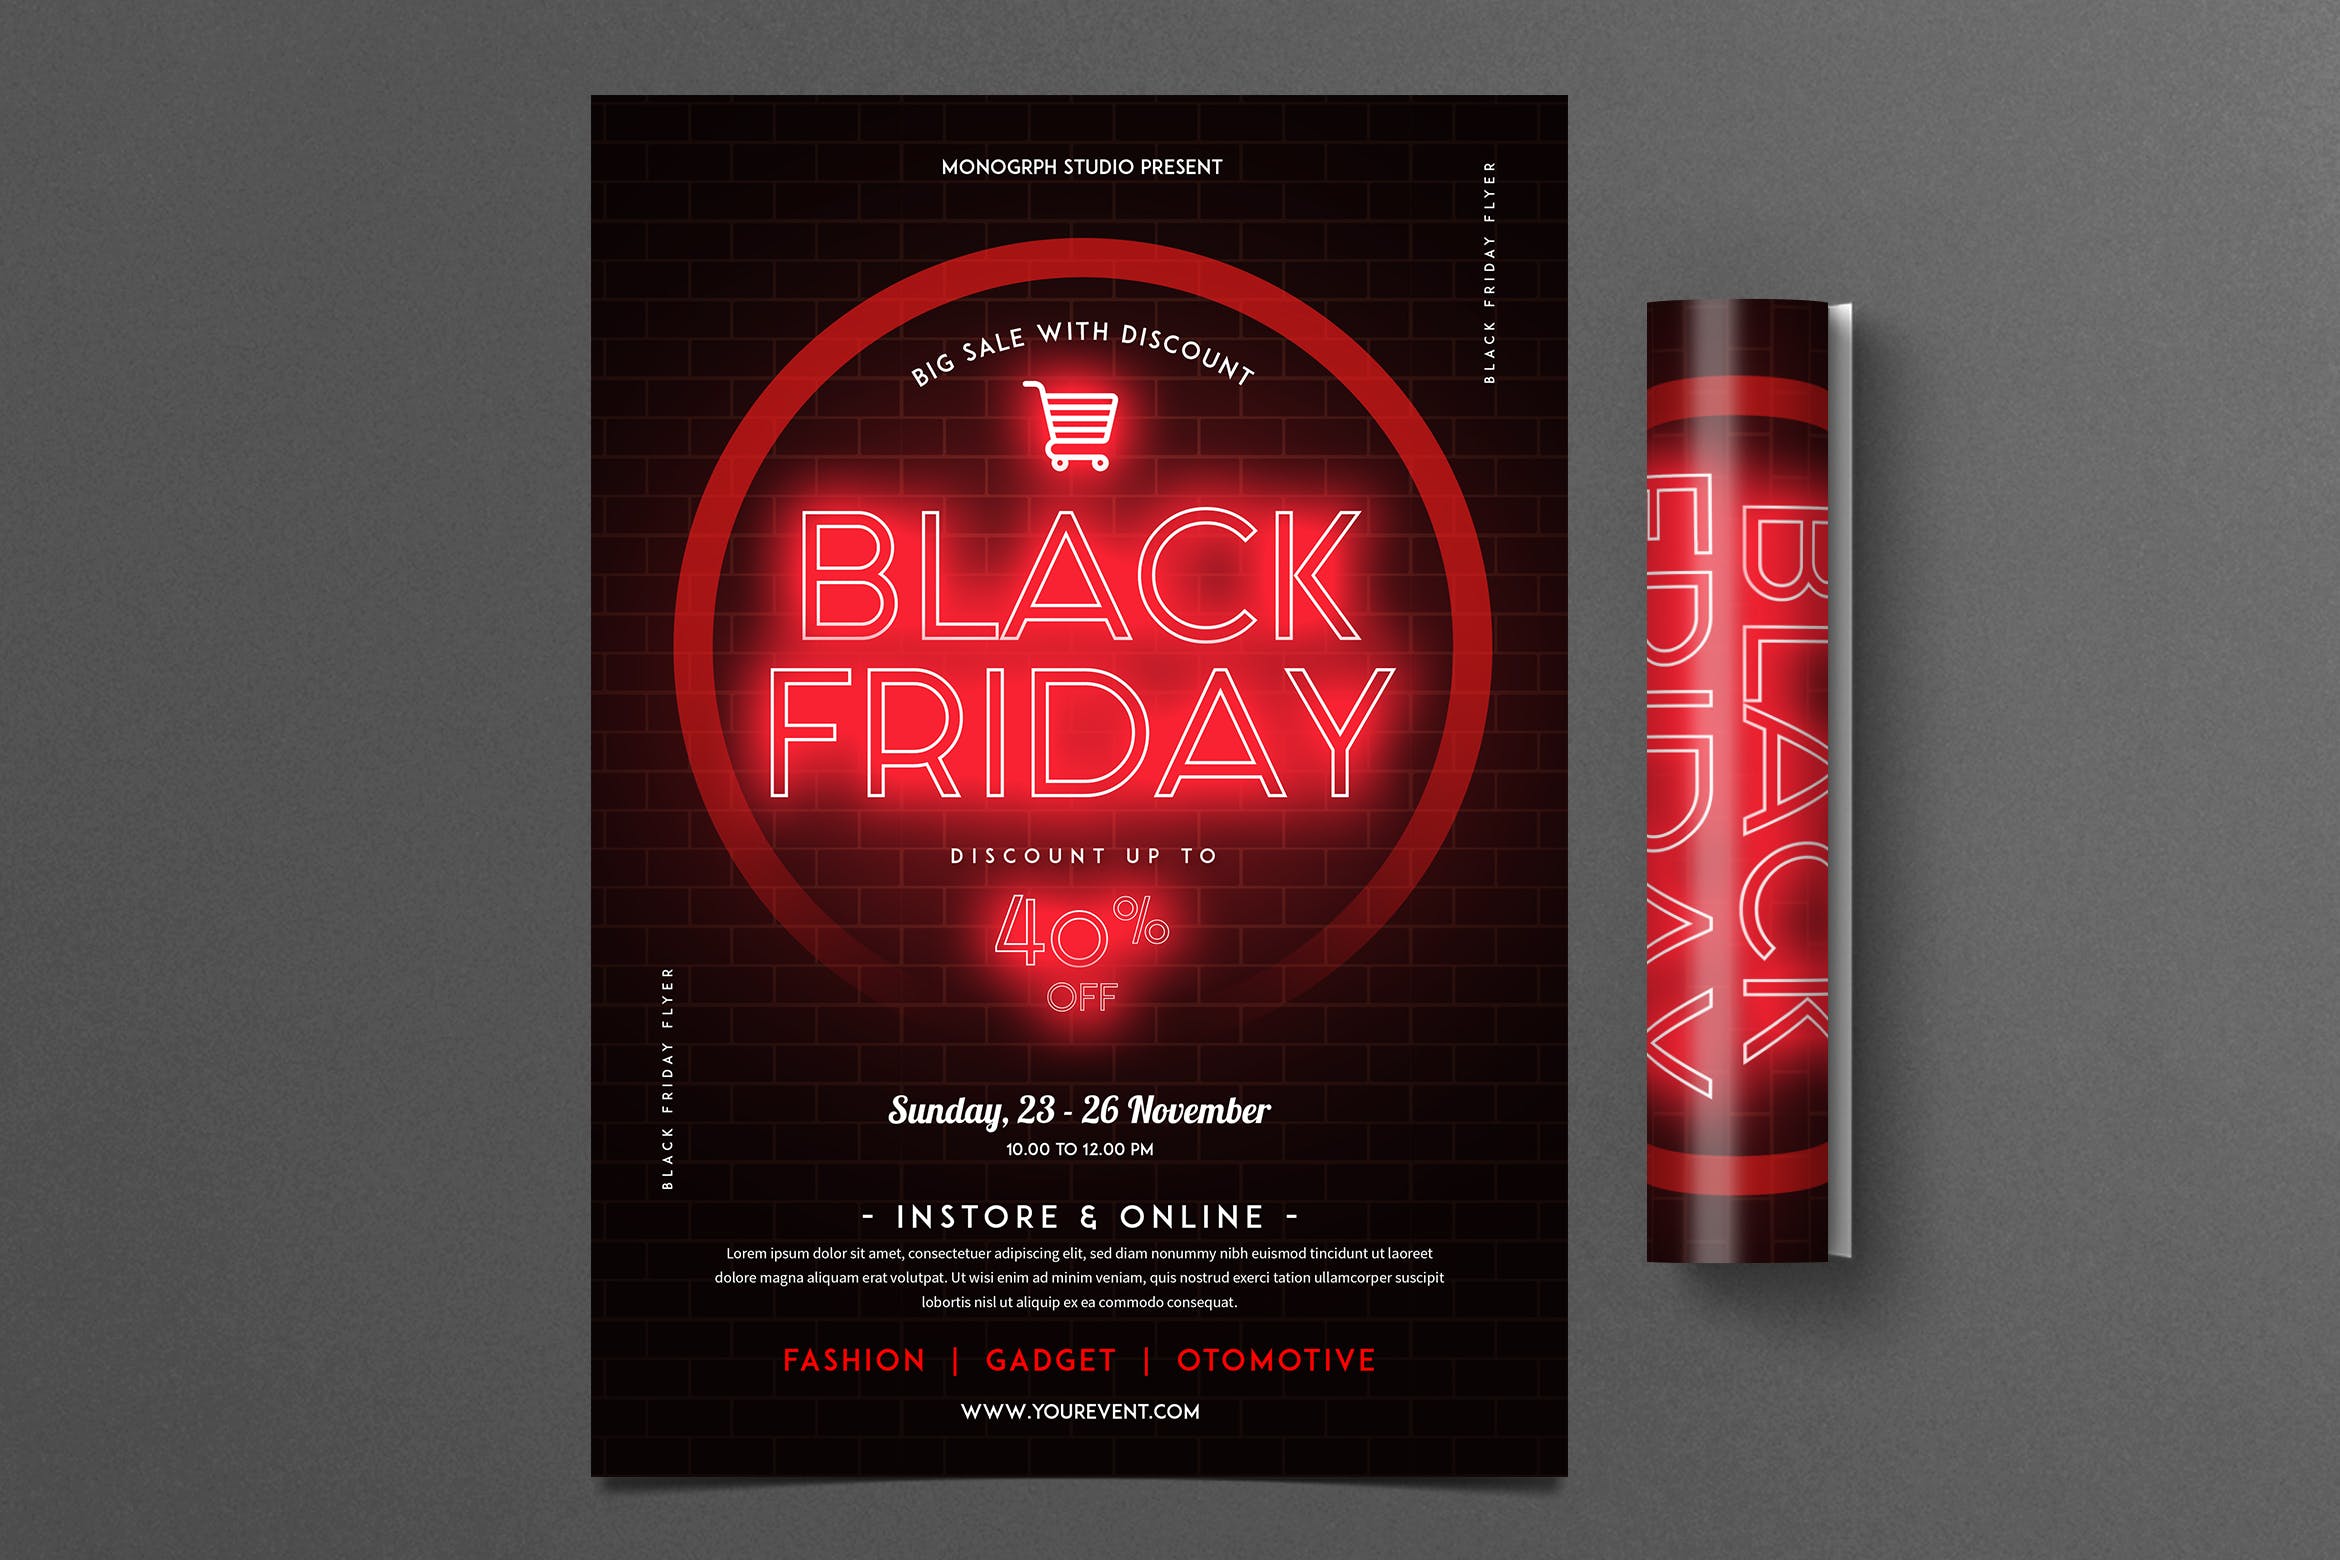 黒五购物节促销广告霓虹灯设计风格海报模板 Black Friday Flyer插图